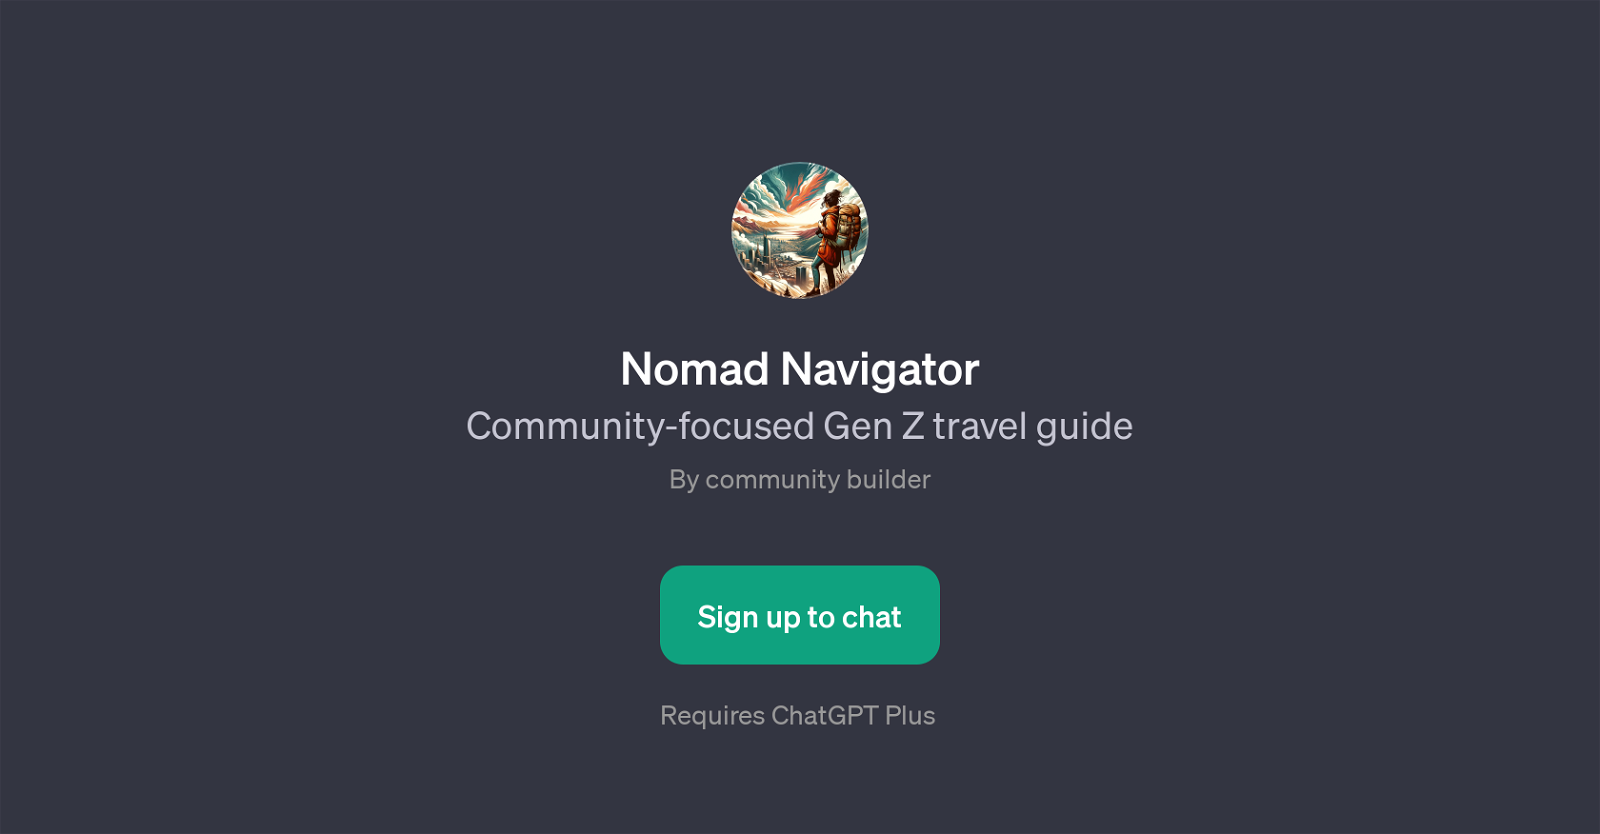 Nomad Navigator website